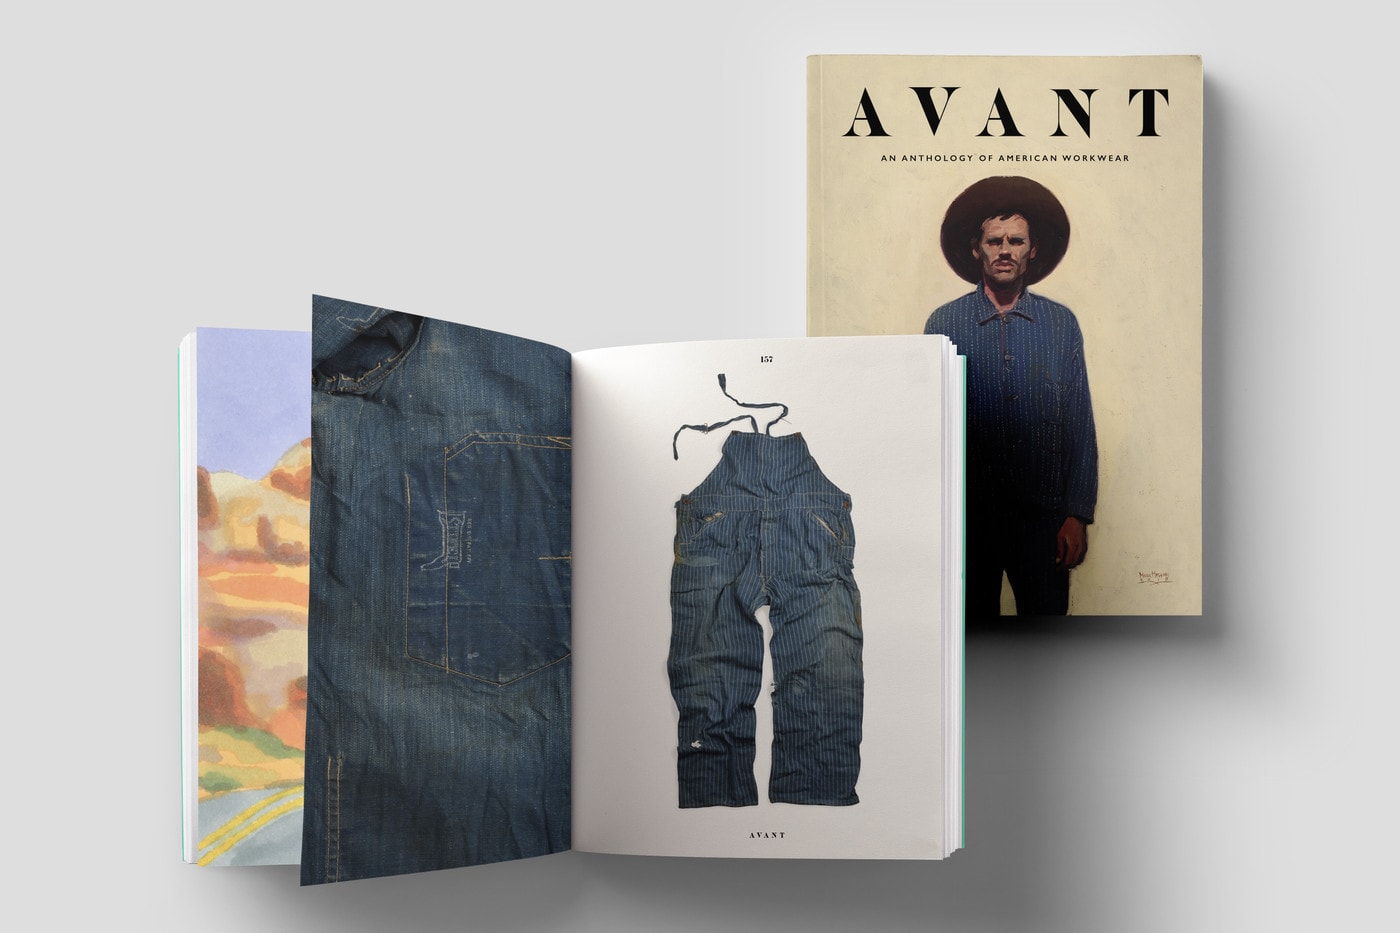 avant magazine volume one anthology on american workwear